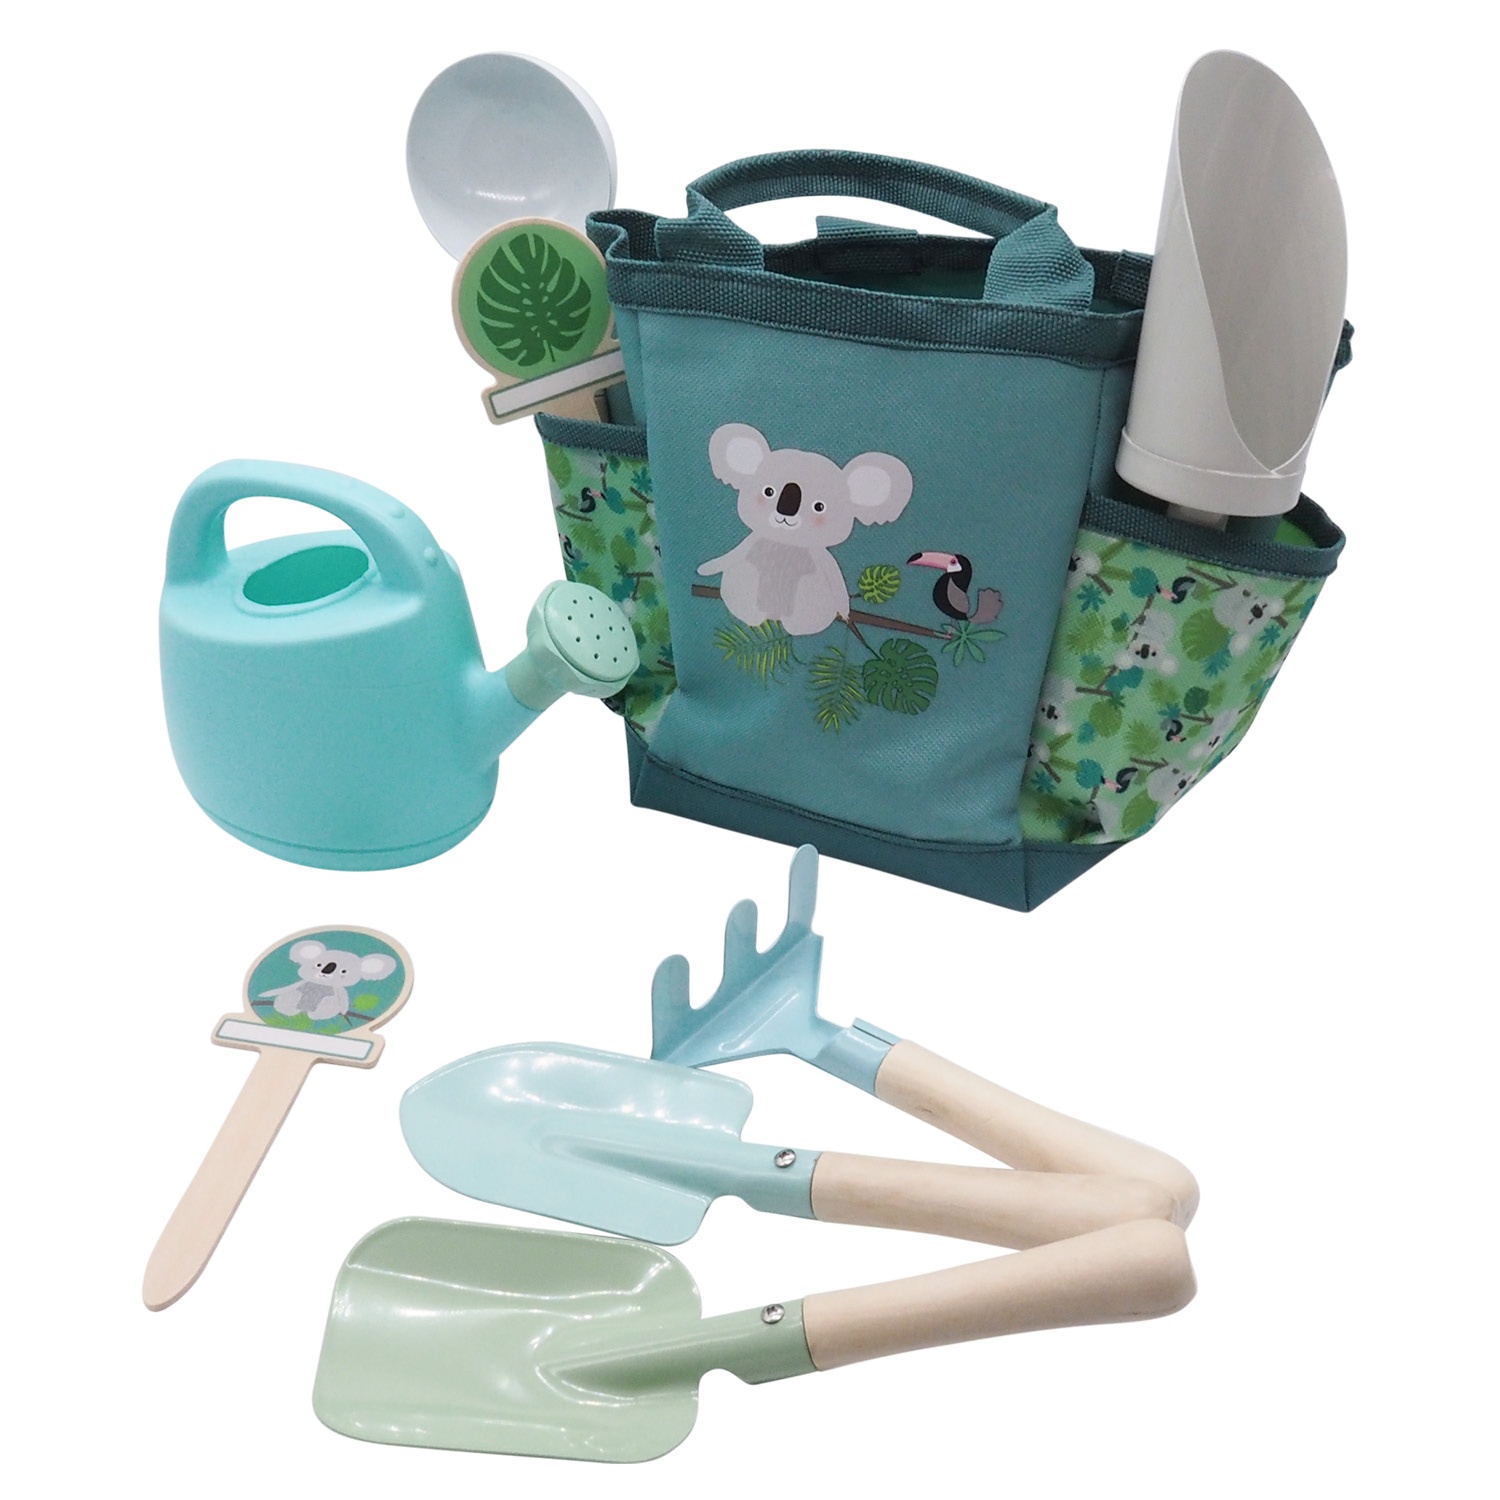 6 Stück Kinder GartengeräTe Set Outdoor Spielzeug set für Kinder Rosa/Blau DHL 